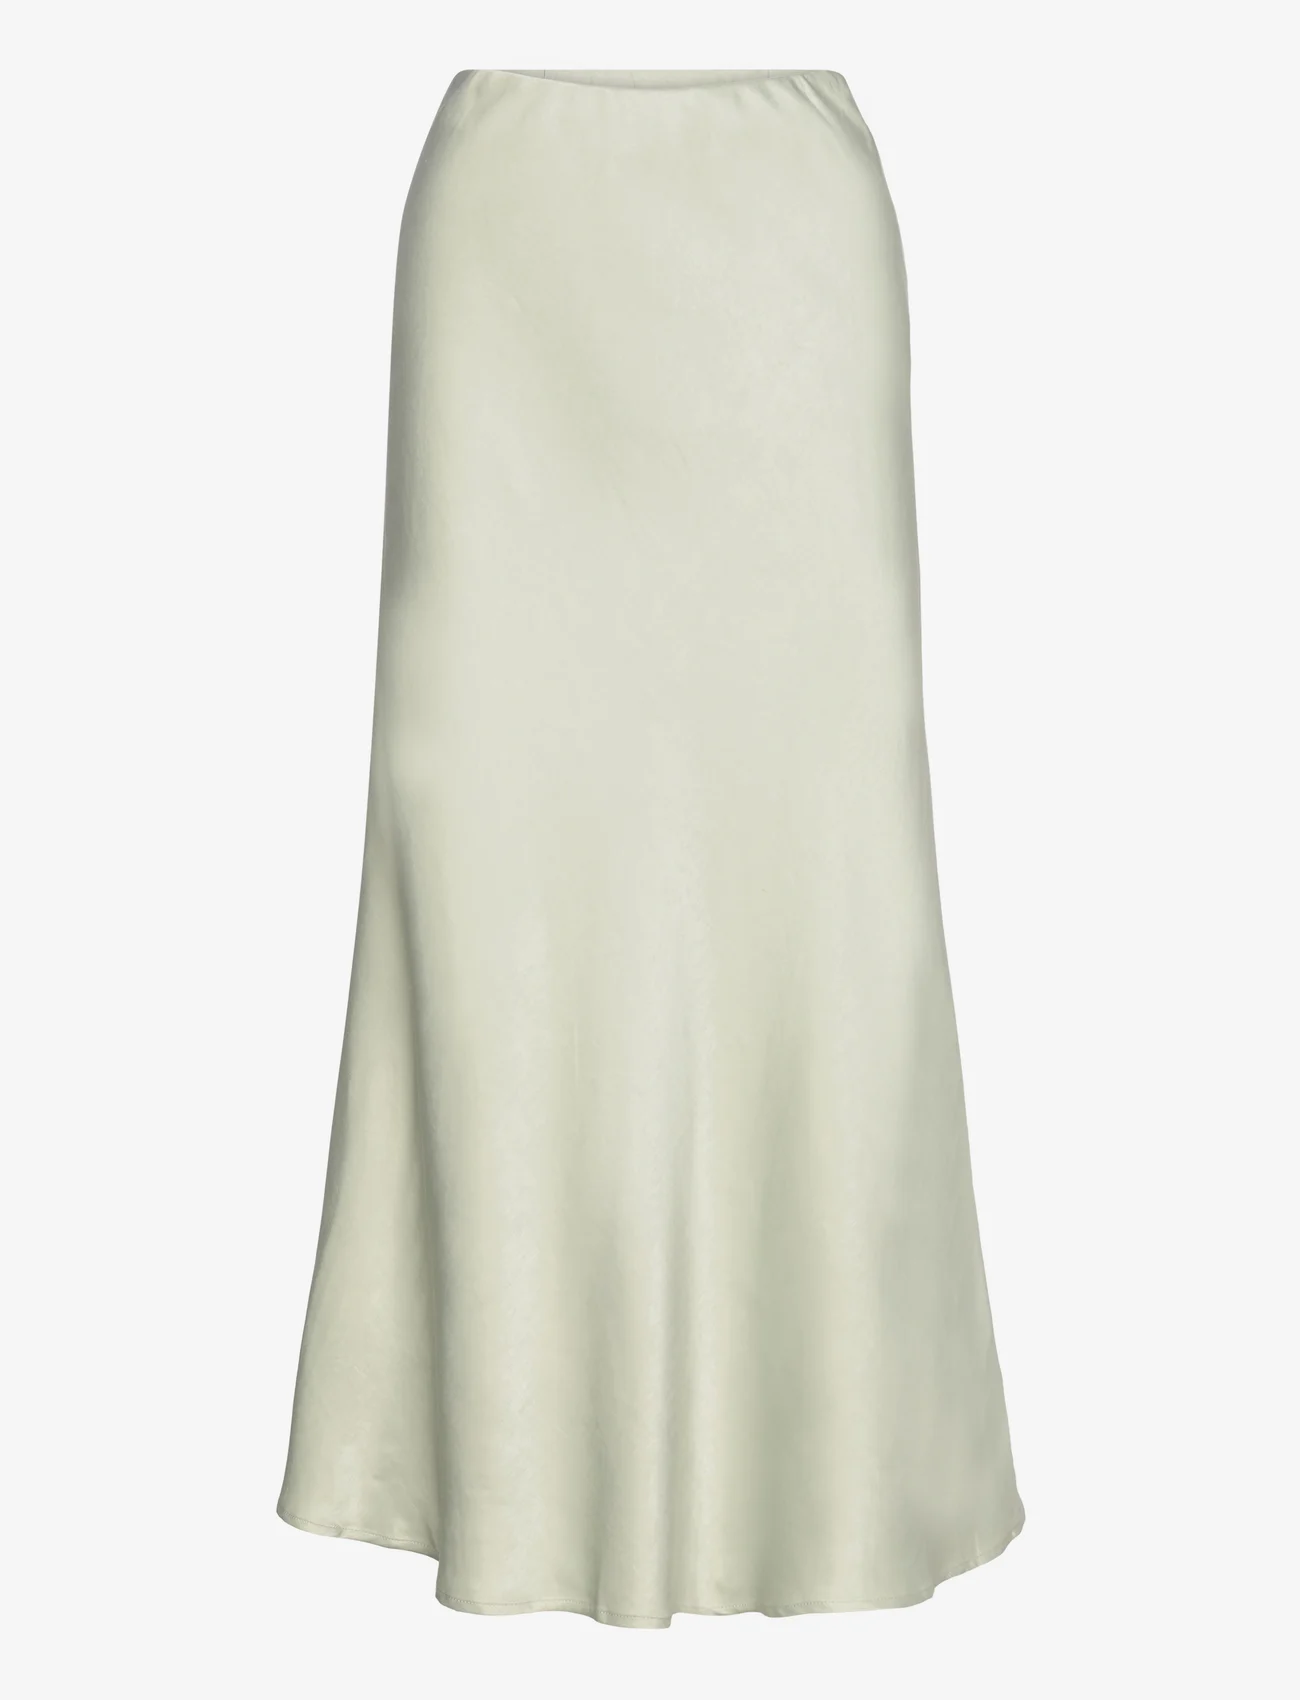 A-View - Carry sateen skirt - satengskjørt - pale mint - 0